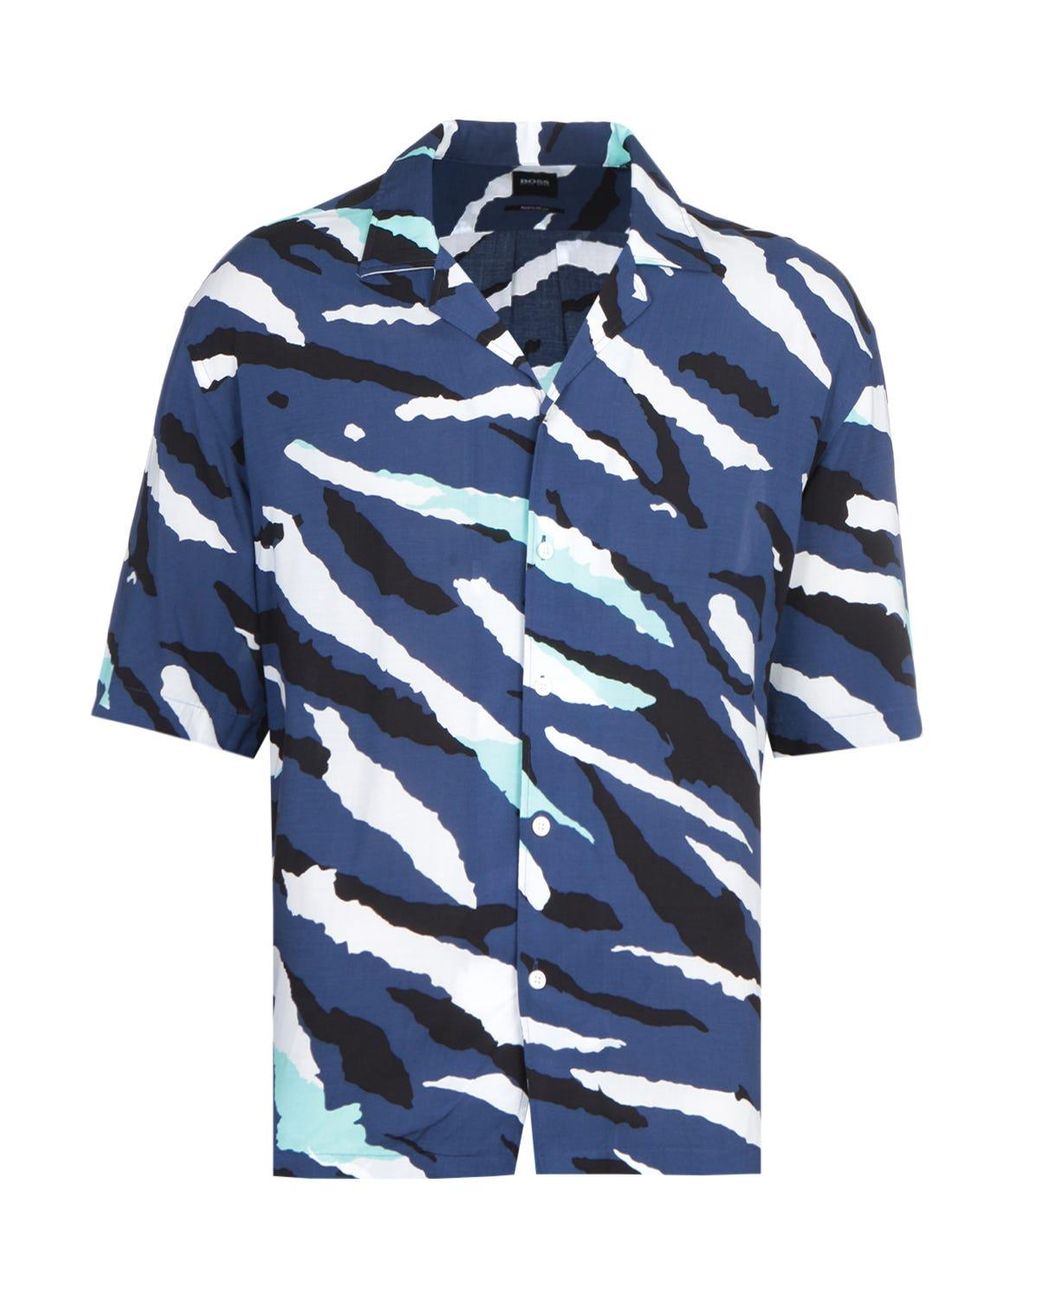 Hugo Boss Lello Shirt Mens Medium Regular Fit Cotton Linen Blend Blue S/S NWT 